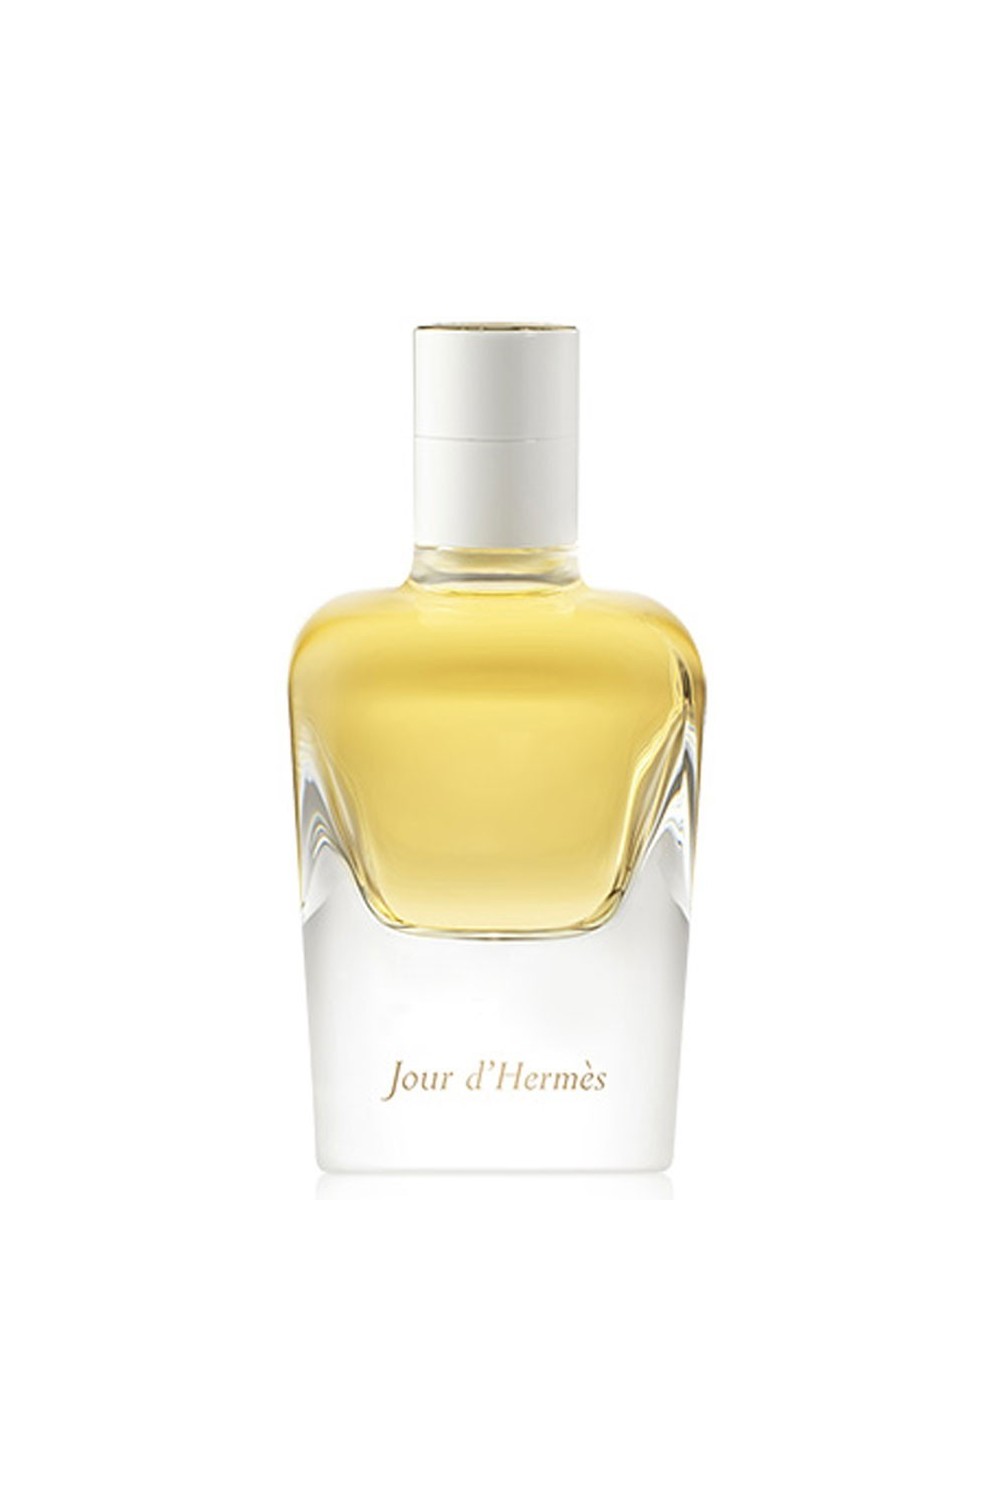 HERMÈS - Hermes Jour D'hermes Eau De Perfume Spray 50ml